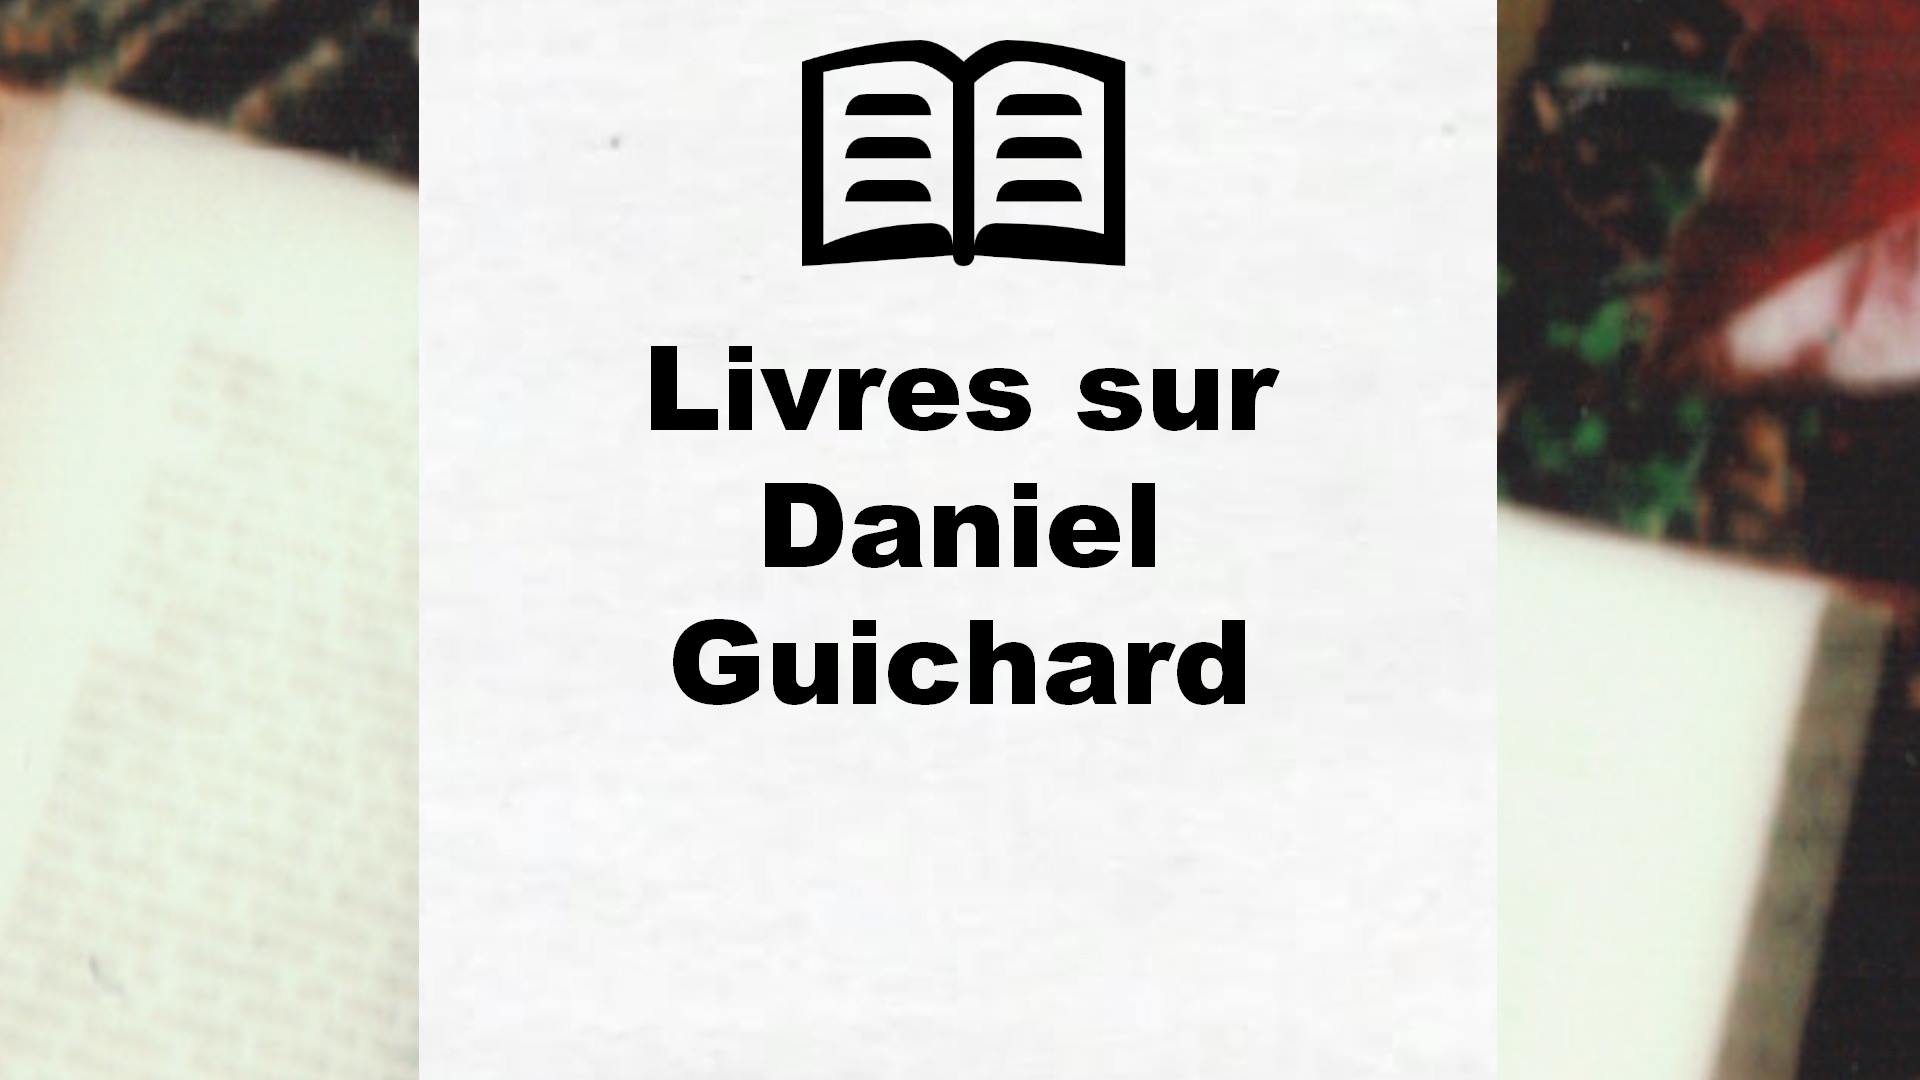 Livres sur Daniel Guichard